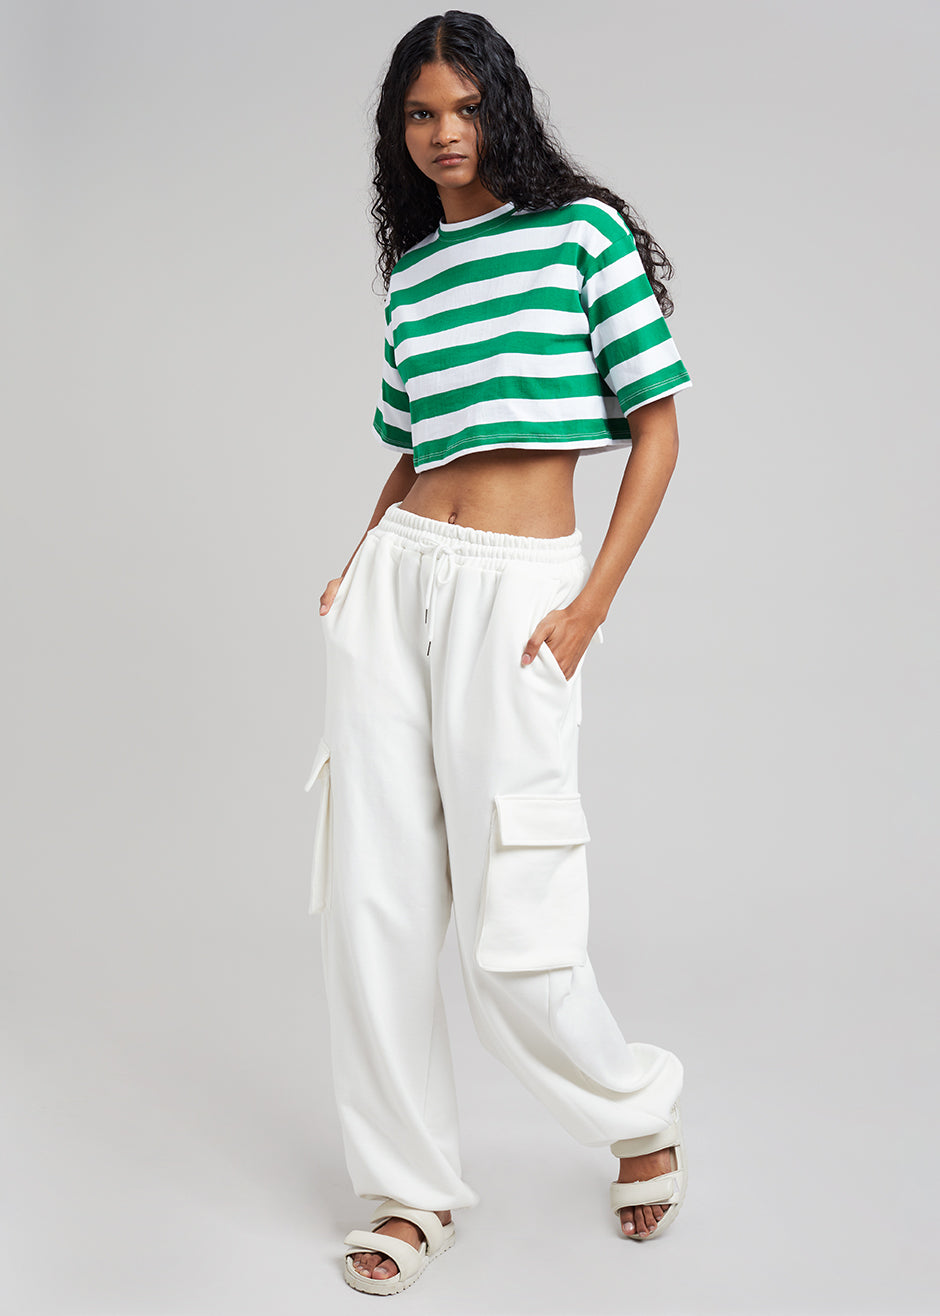 Karina Cropped T-Shirt - Green/White - 1